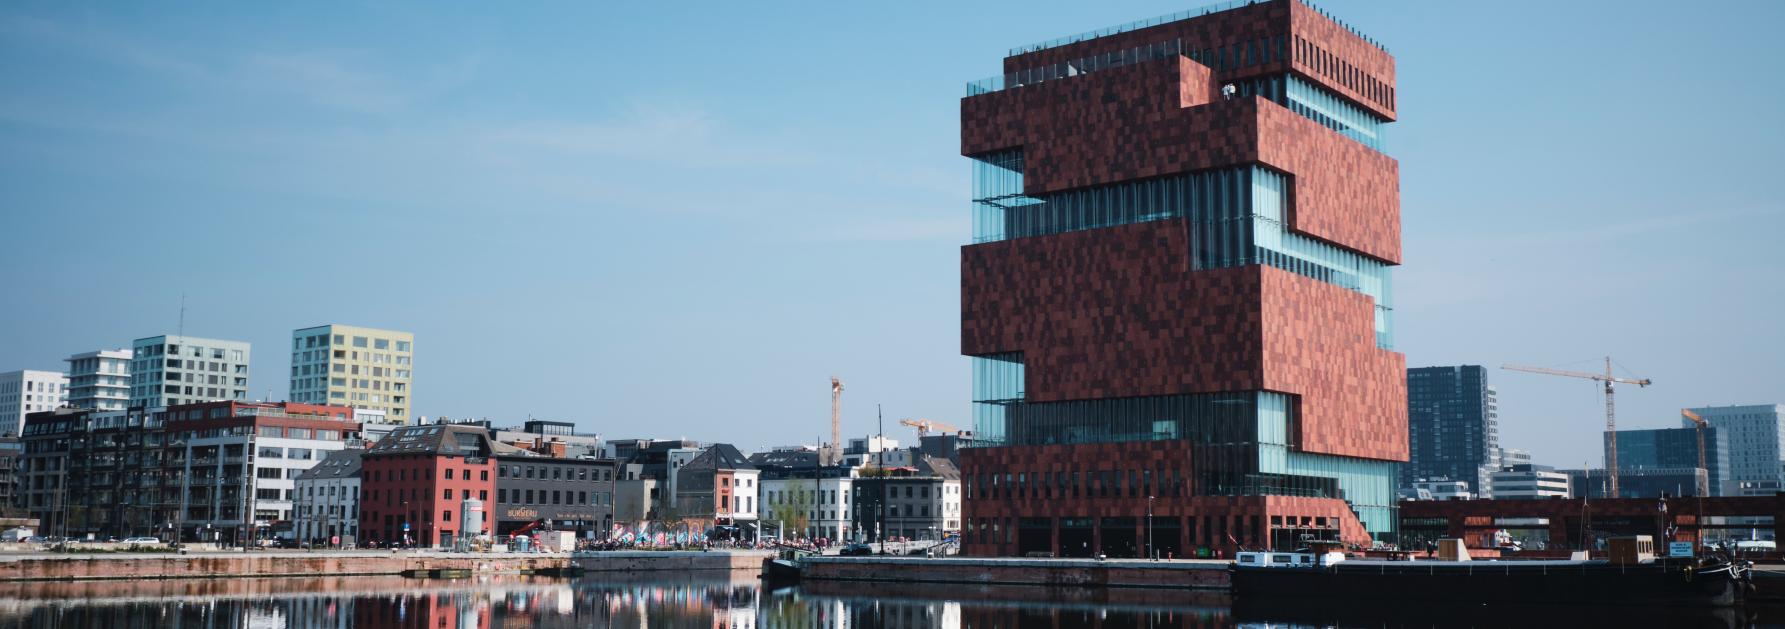 MAS Antwerpen - Musea in Vlaanderen en Brussel 